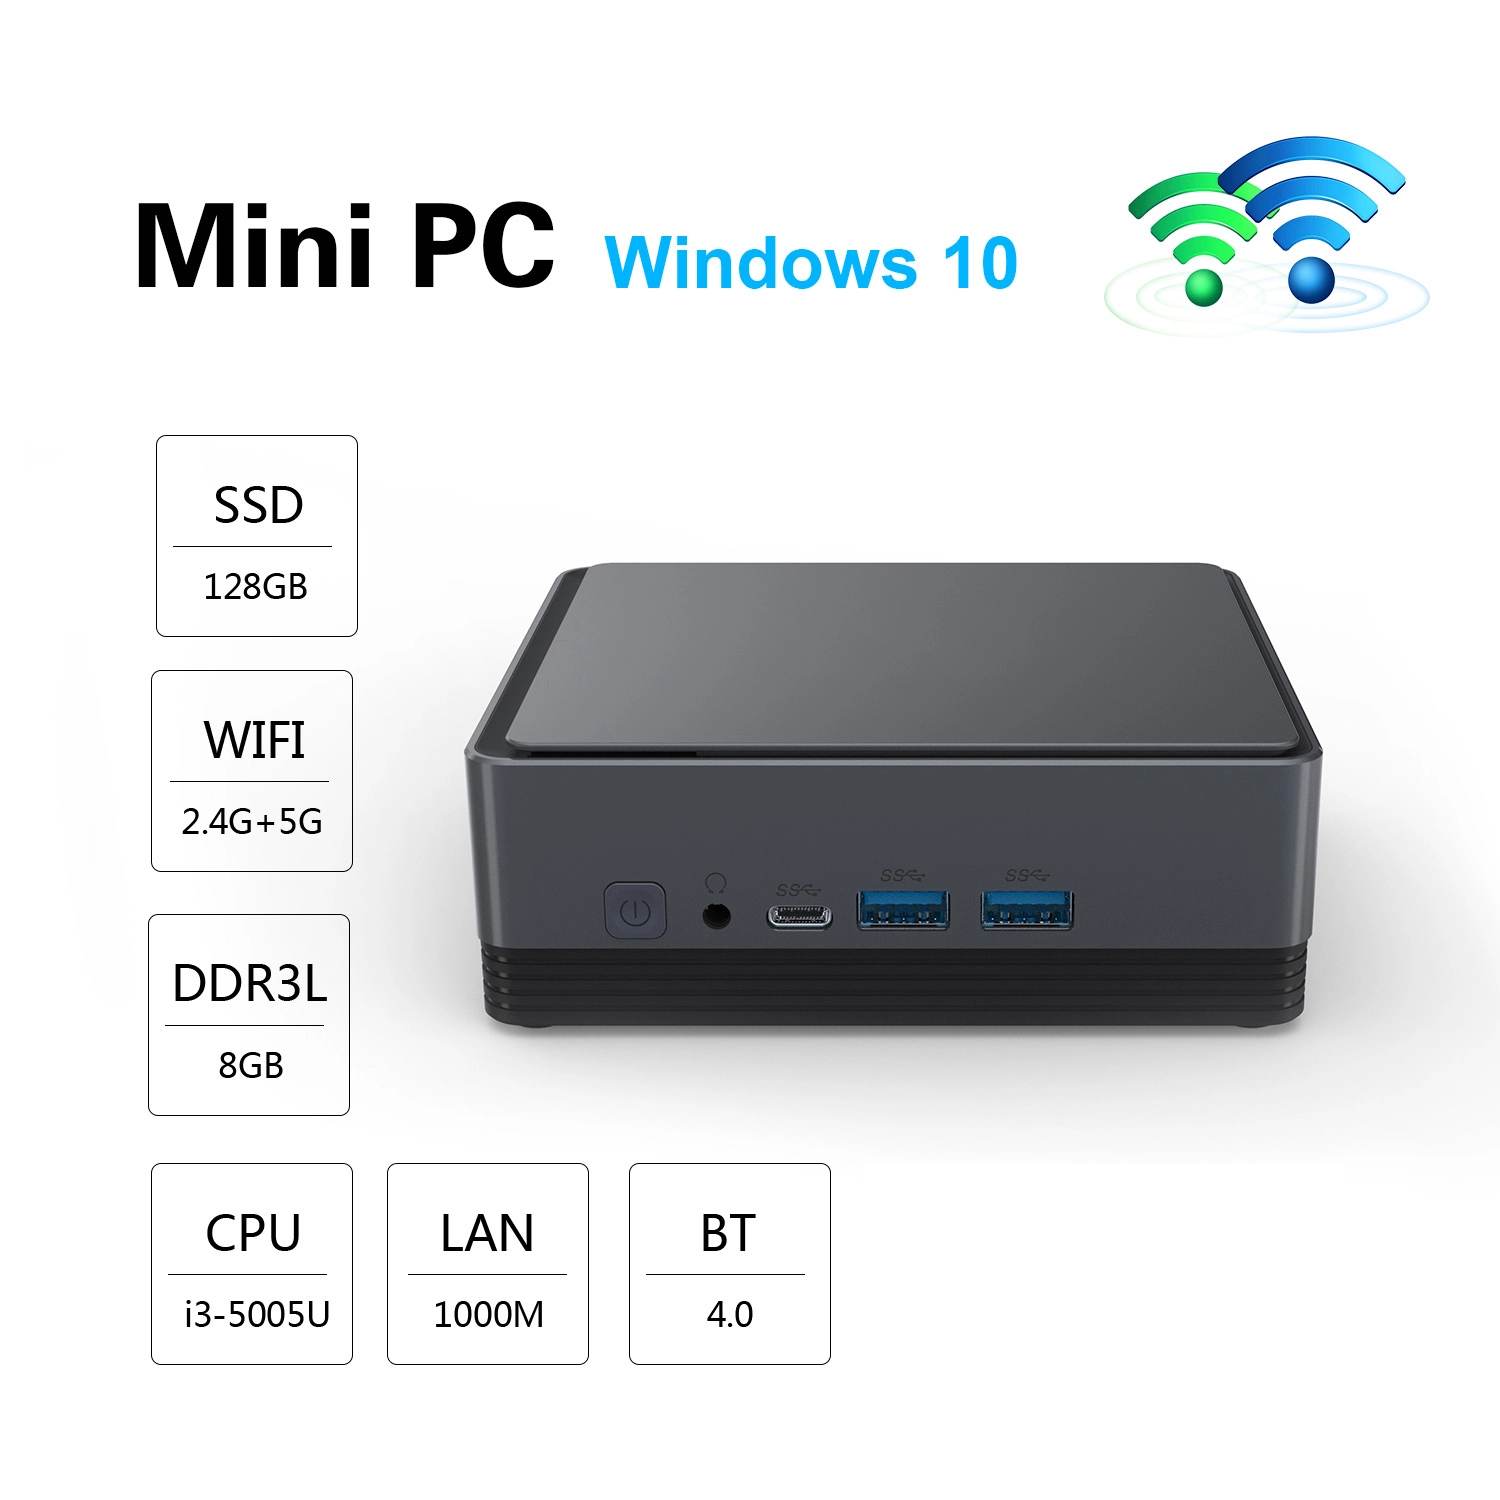 Mini PC, Intel Mini PC, Mini PC Windows 10, Intel Windows 10, Intel Mini PC Windows 10, Intel i3, Intel i3-5005U, Intel Mini PC Windows 10 Intel i3-5005U 8GB RAM Support 128G SSD Dual HDMI Onenuts Nut G5